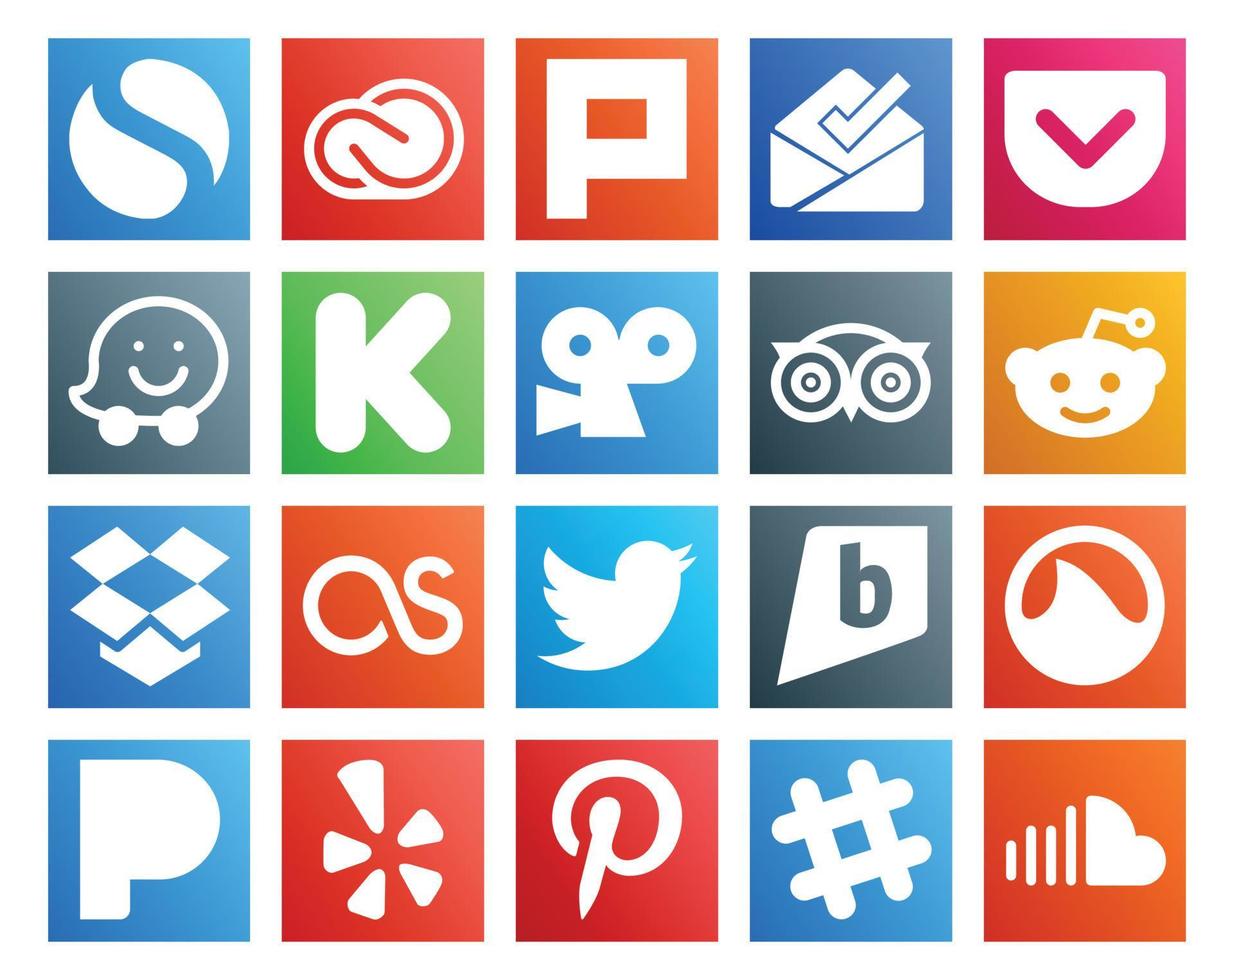 20 Social-Media-Icon-Packs, einschließlich Brightkite, Twitter, Kickstarter, Lastfm, Reddit vektor